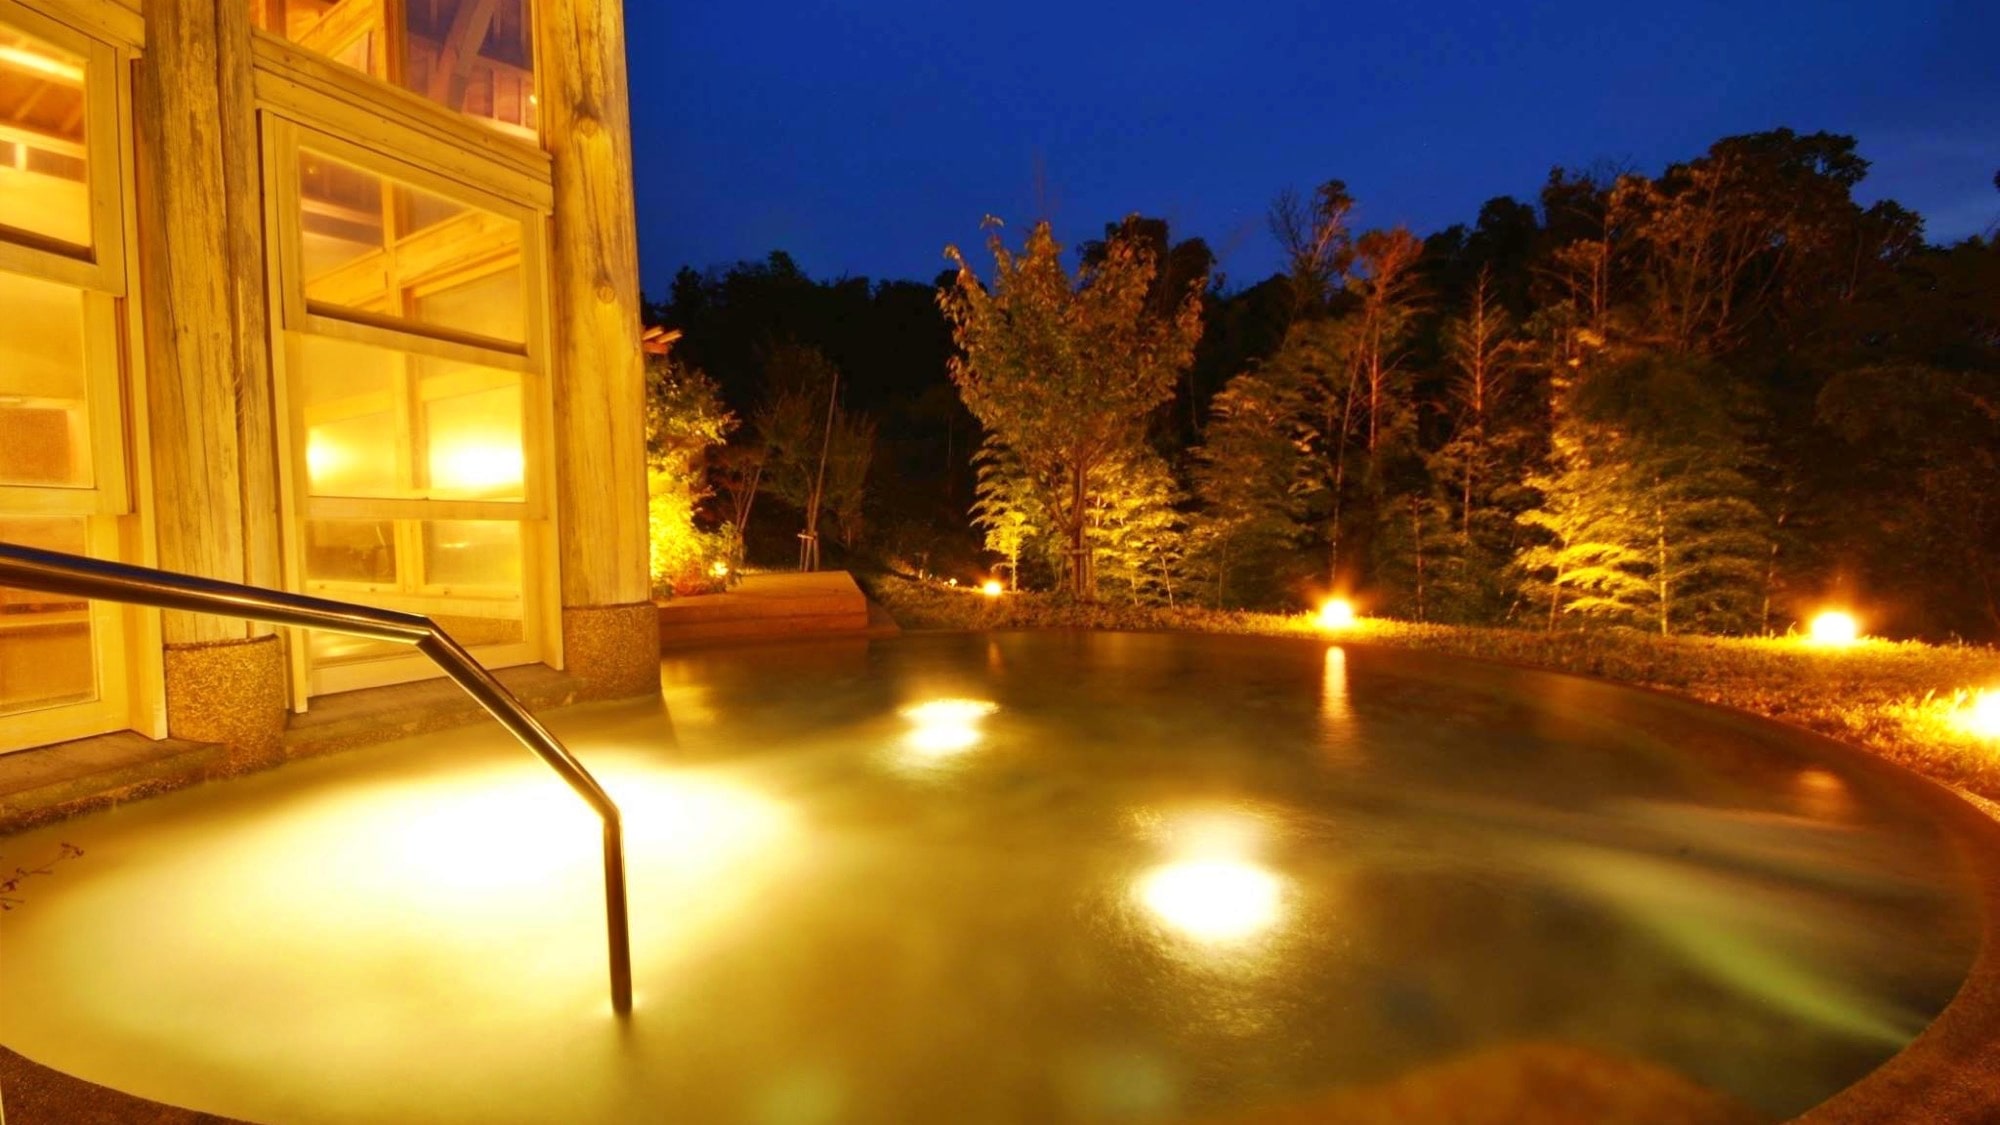 開放感のある大きな露天風呂が特徴の山の温泉【香具夜】